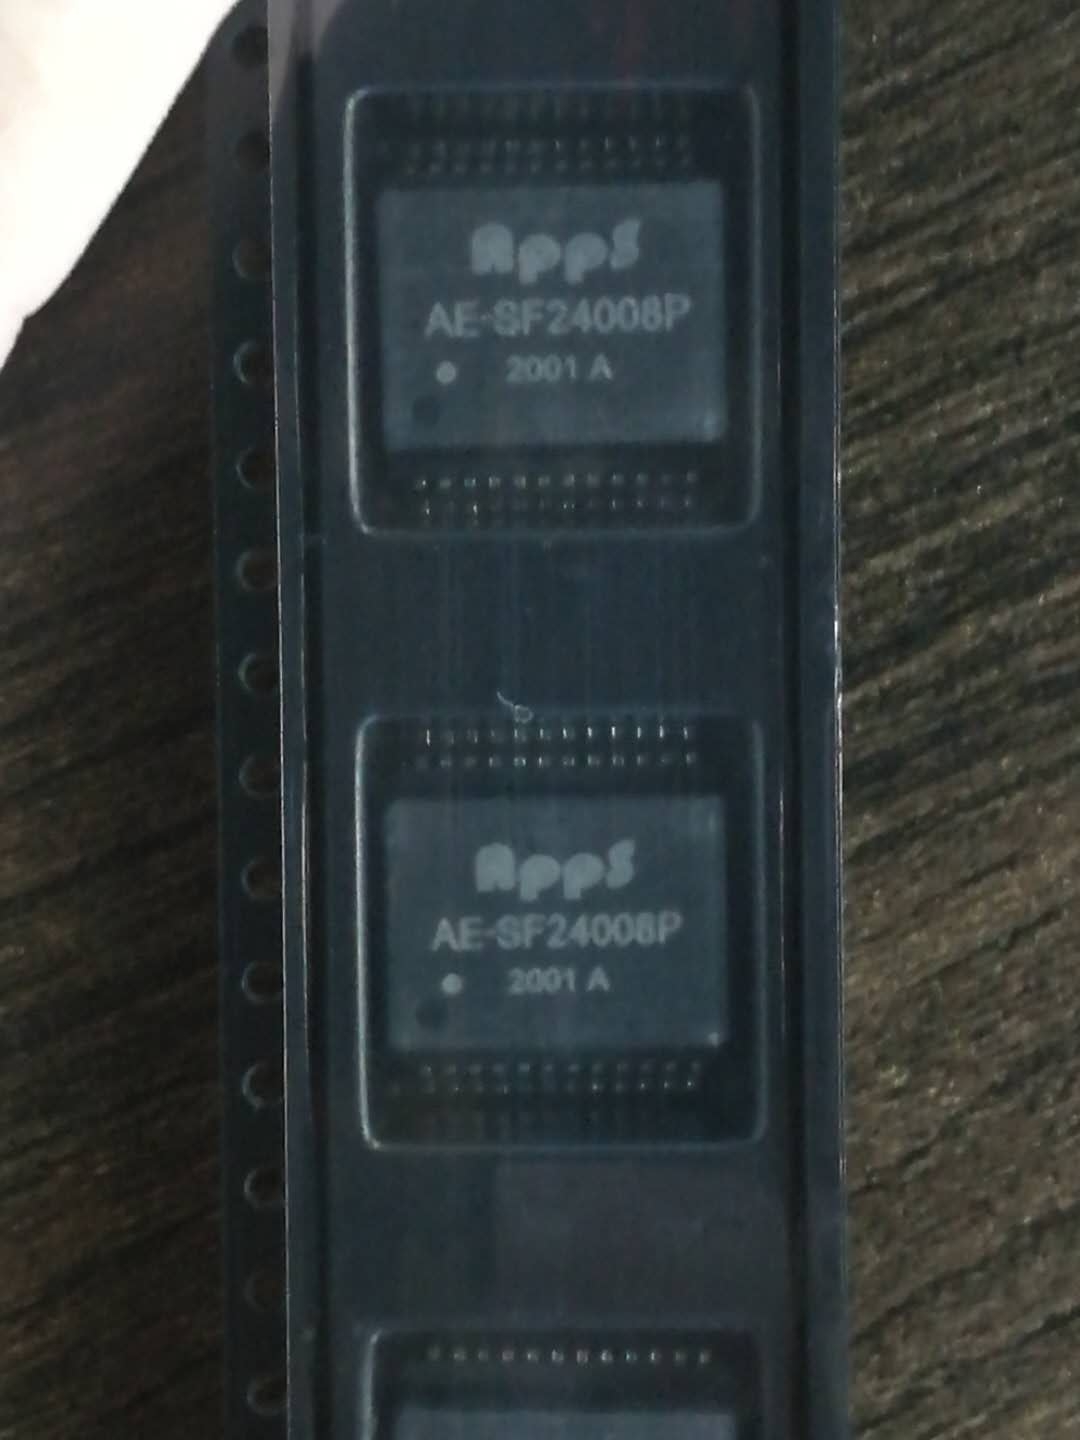 APPS AE-SF24008P 5G网络变压器